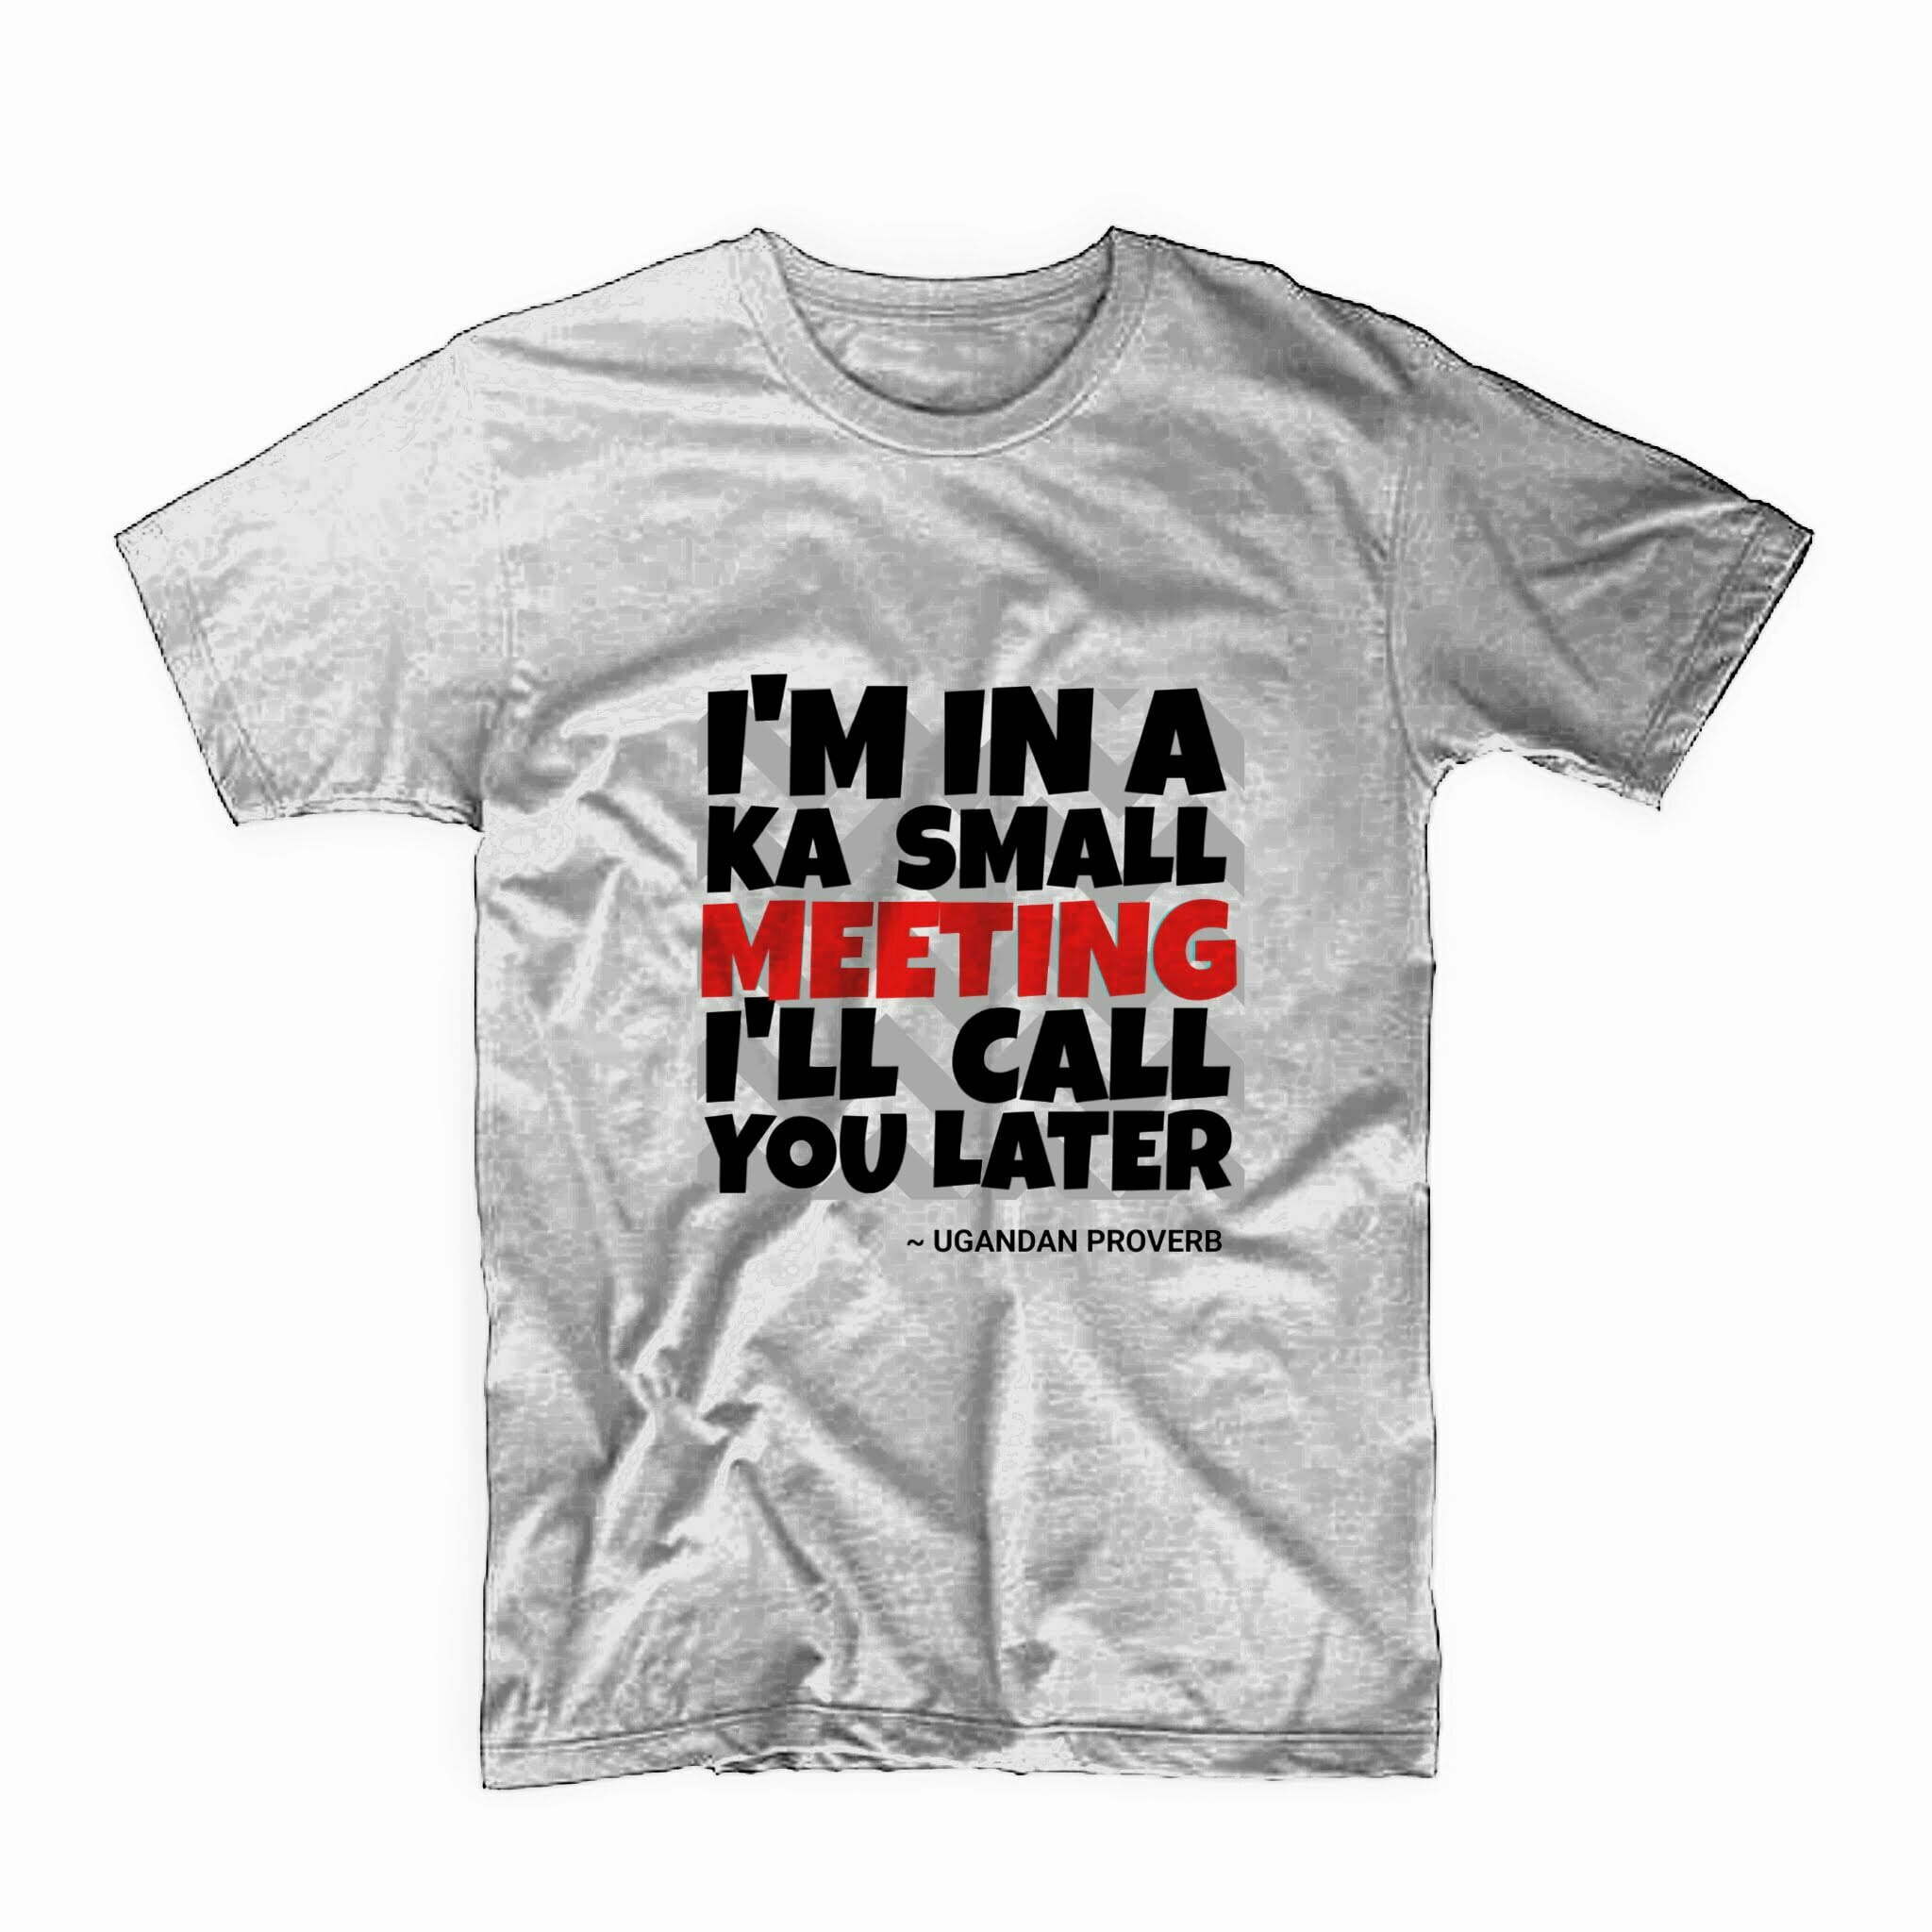 Ka meeting T-shirt